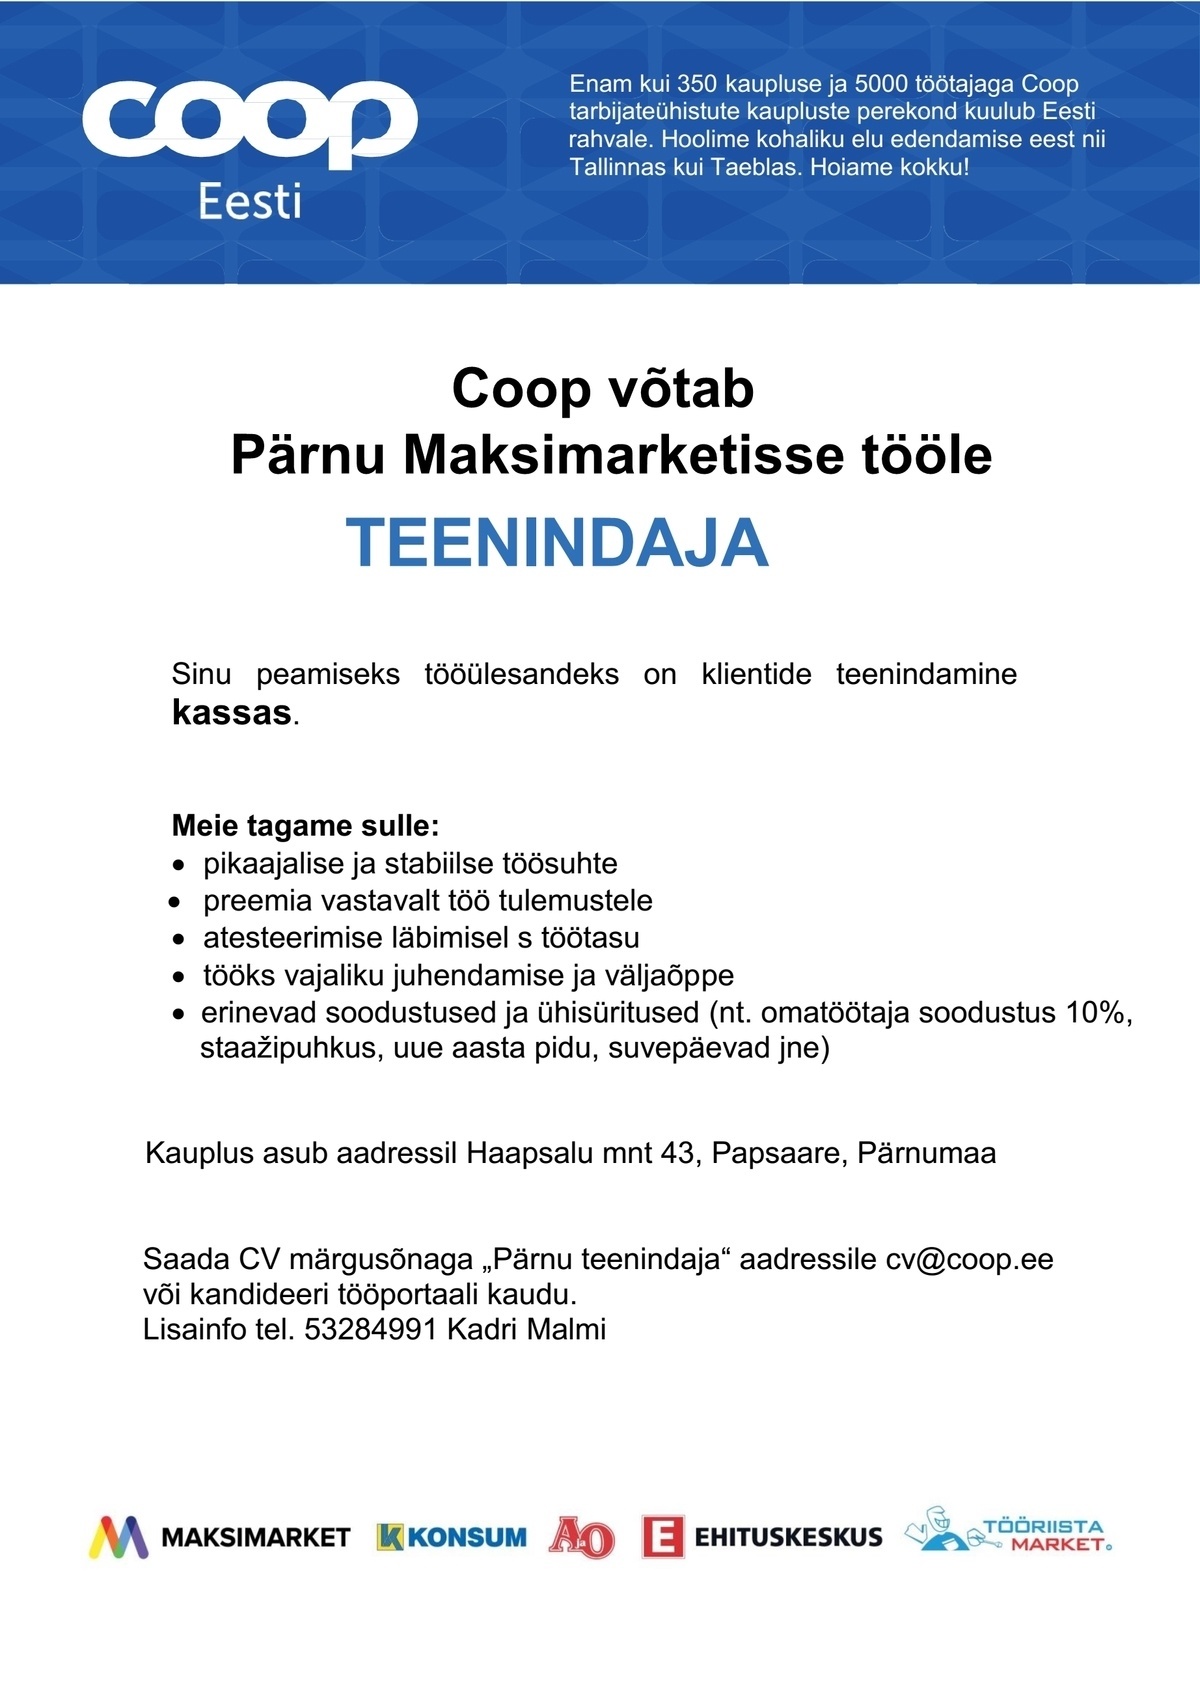 Coop Kaubanduse AS Teenindaja müügisaalis (Pärnu Maksimarket)